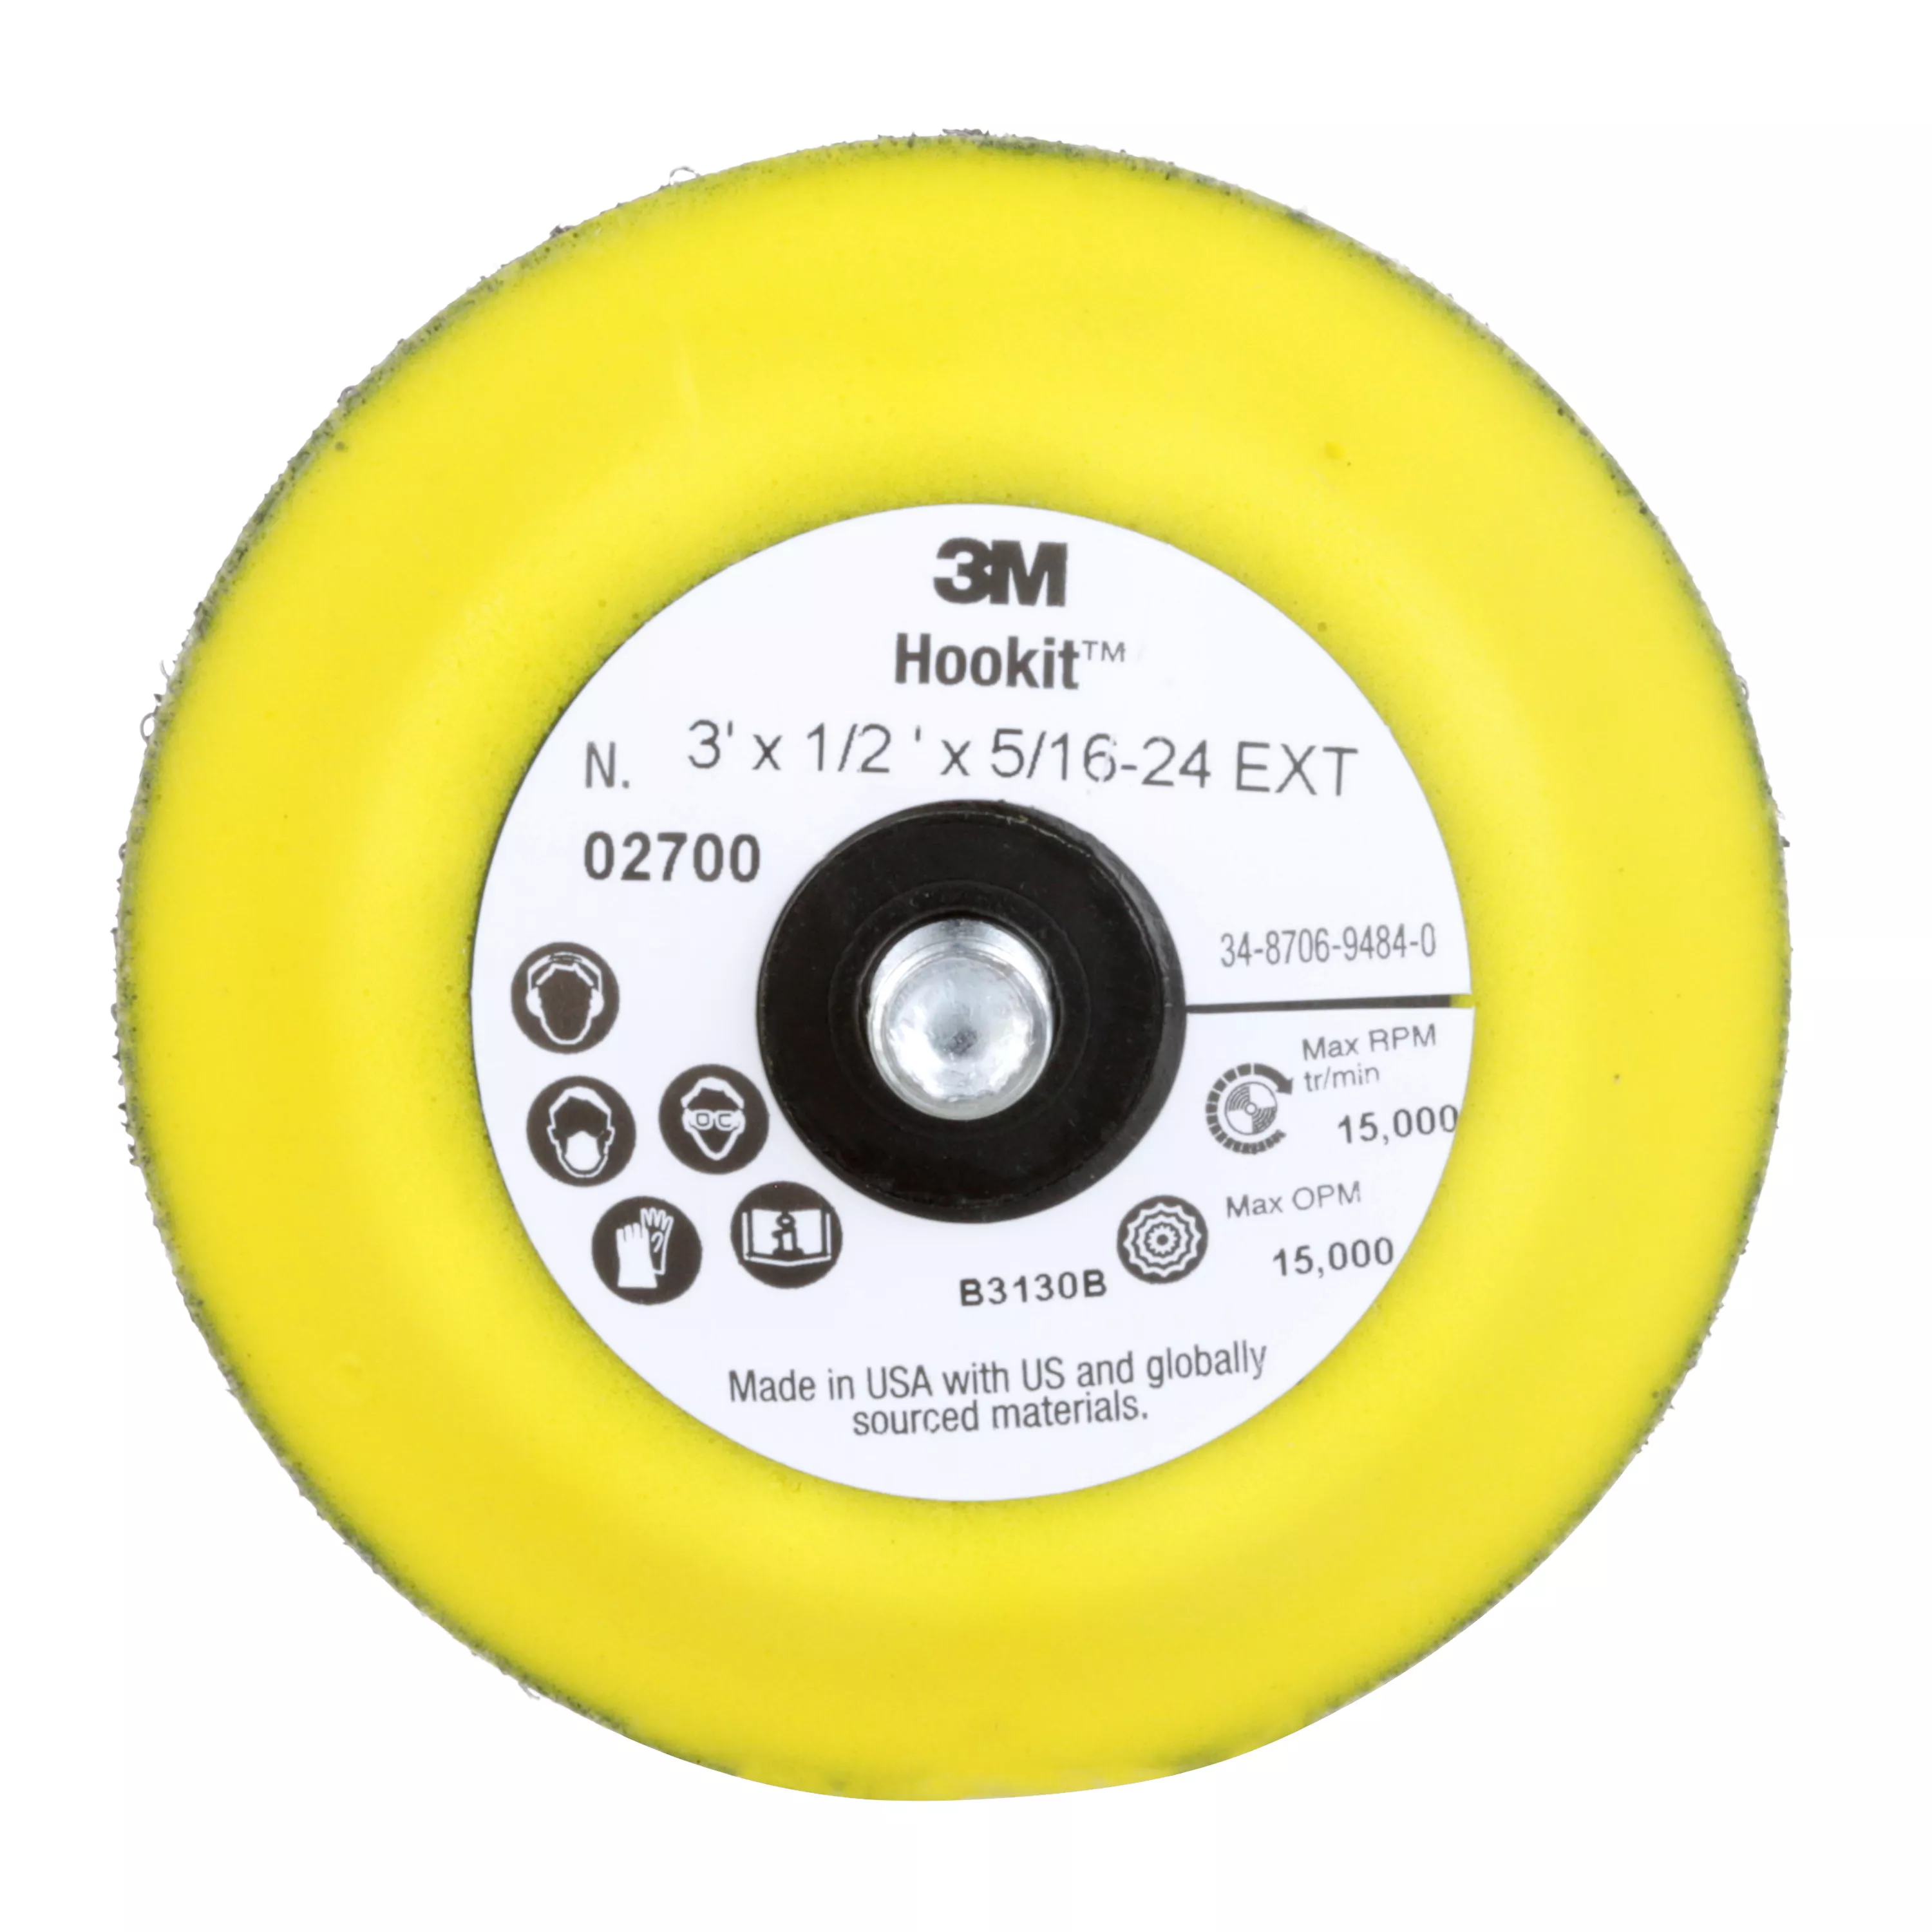 3M™ Hookit™ Disc Pad 02700, 3 in x 1/2 in 5/16-24 External, 5 ea/Case